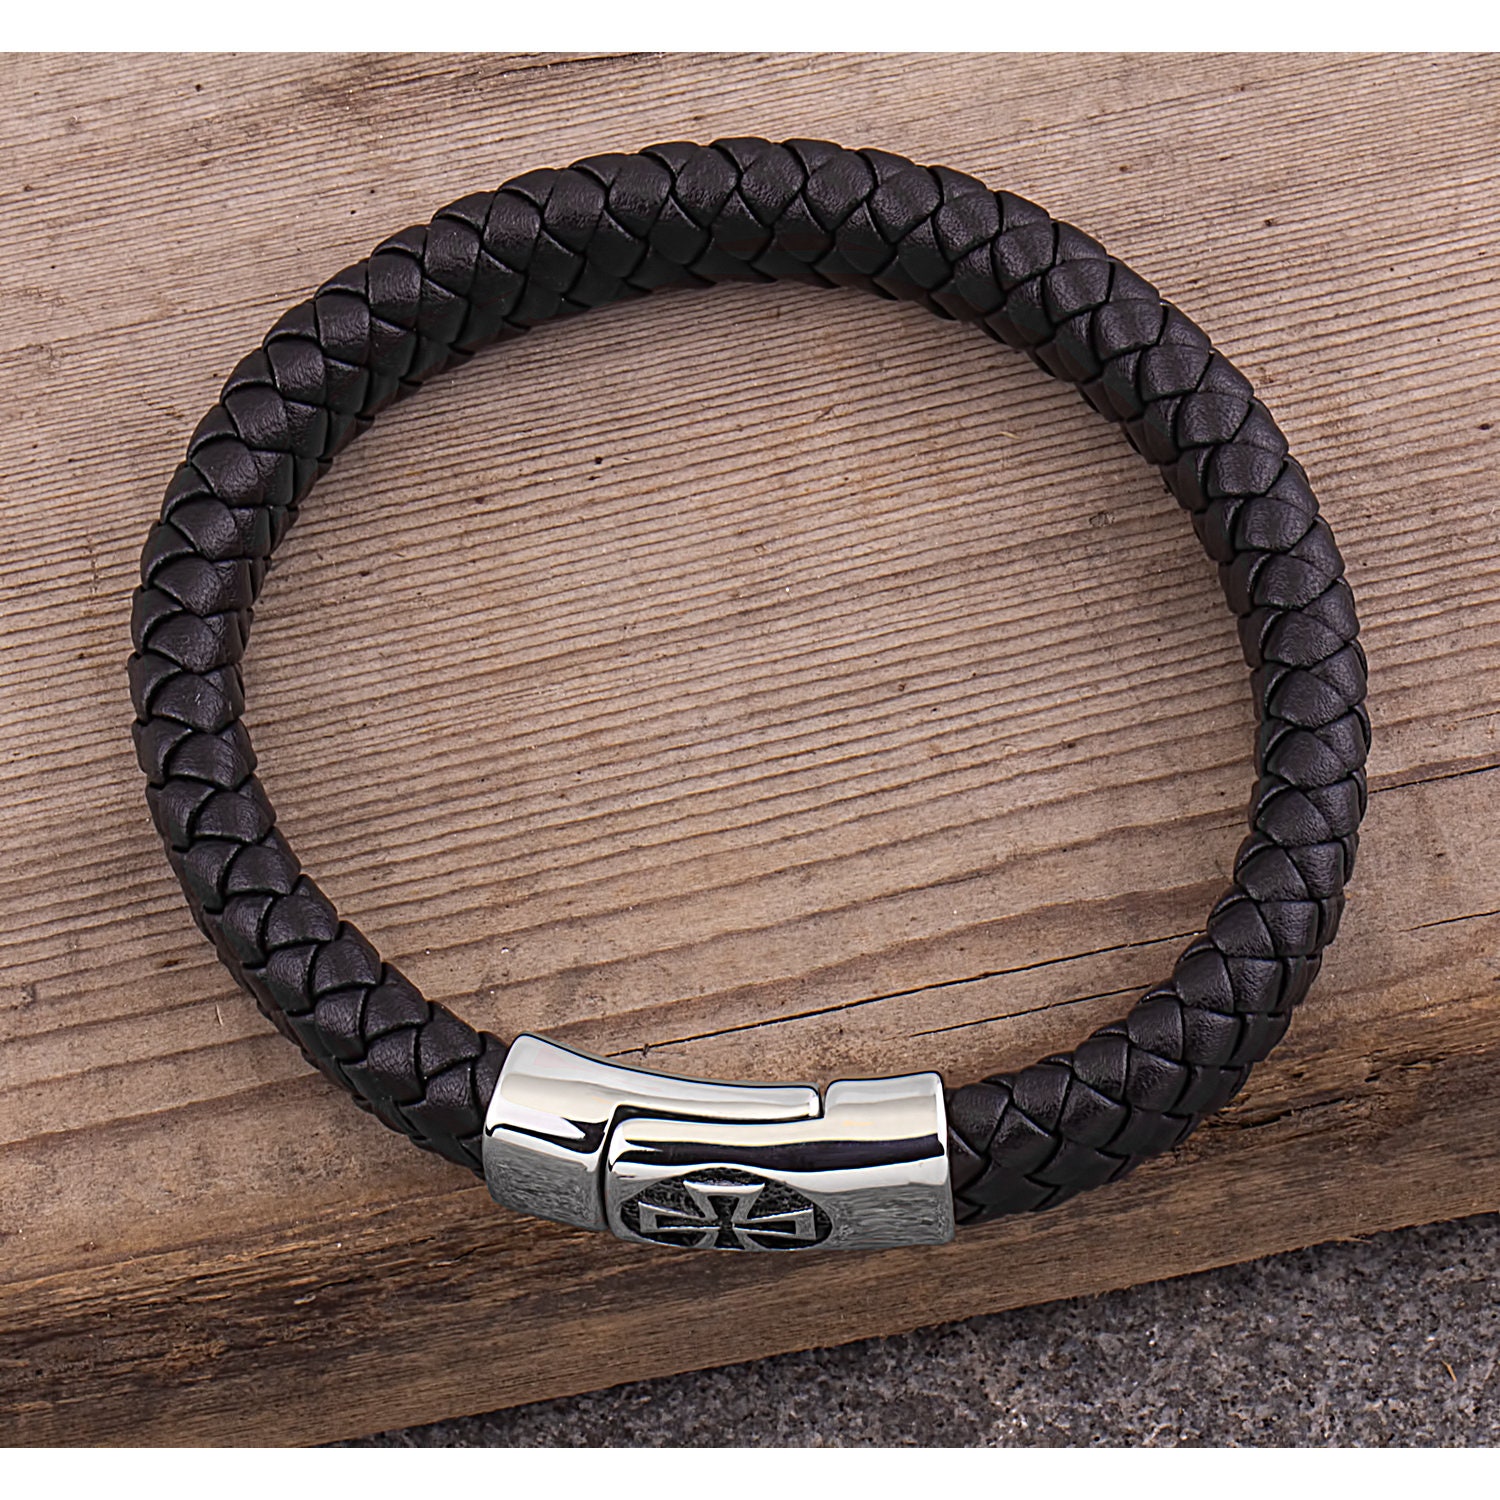 Men's Stainless Steel Black Hand-Braided Leather Bracelet | Etsy